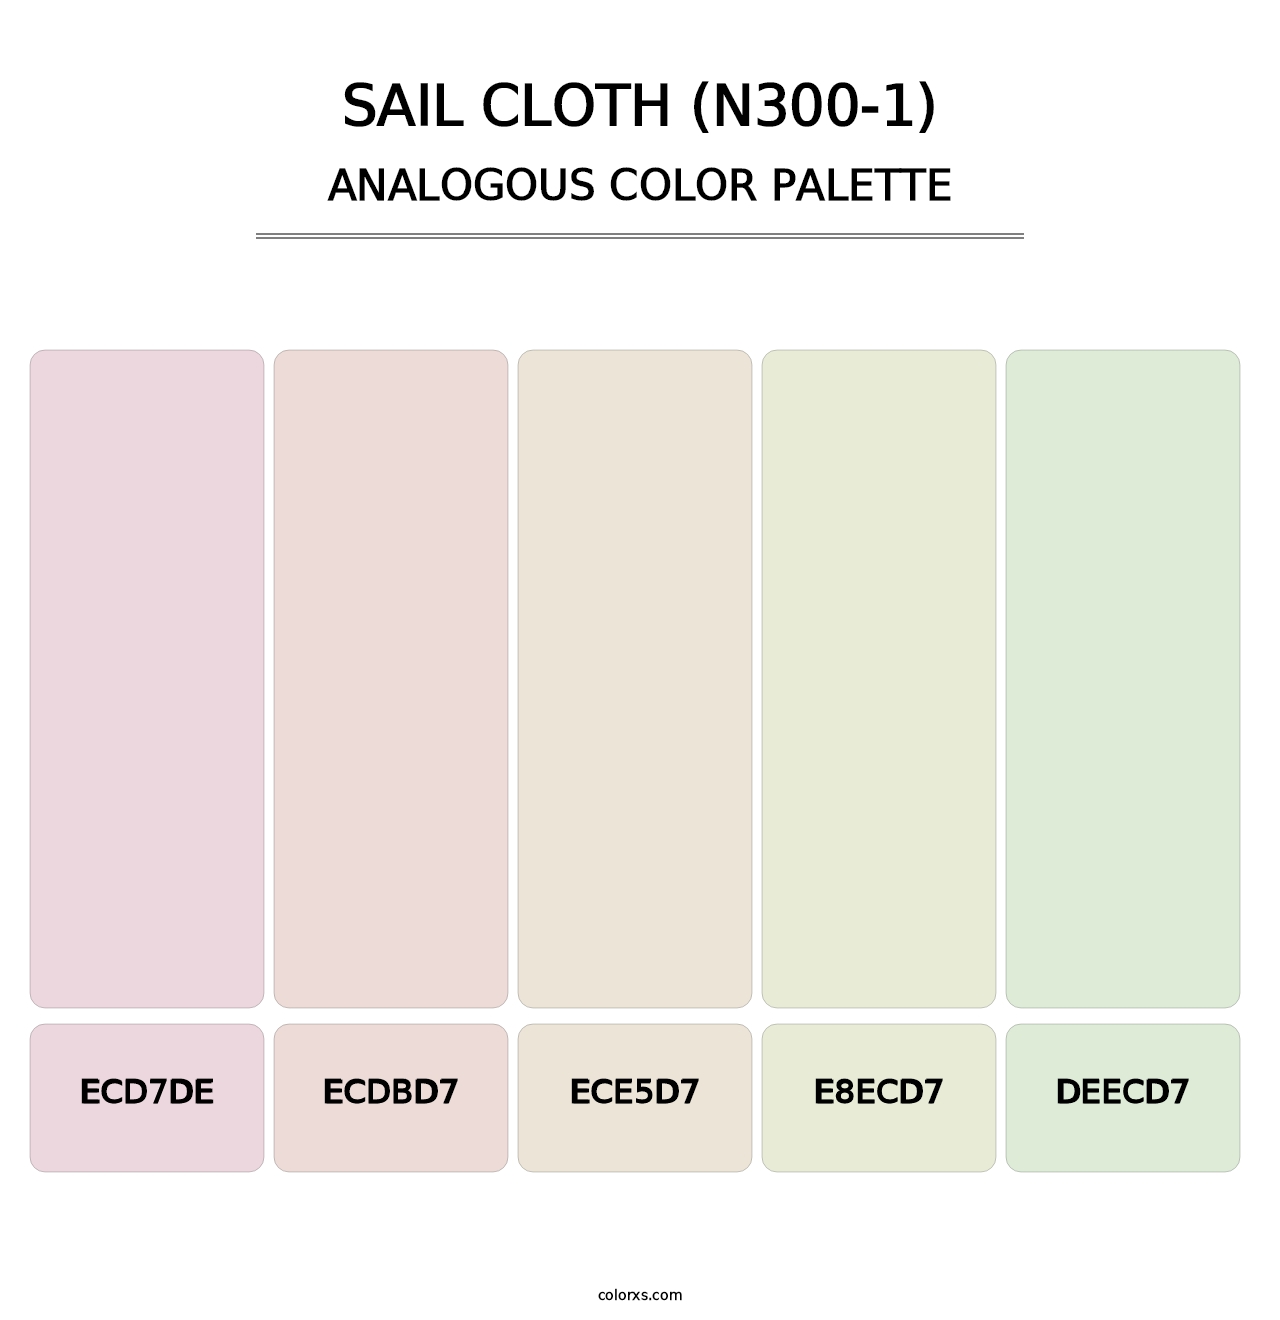 Sail Cloth (N300-1) - Analogous Color Palette